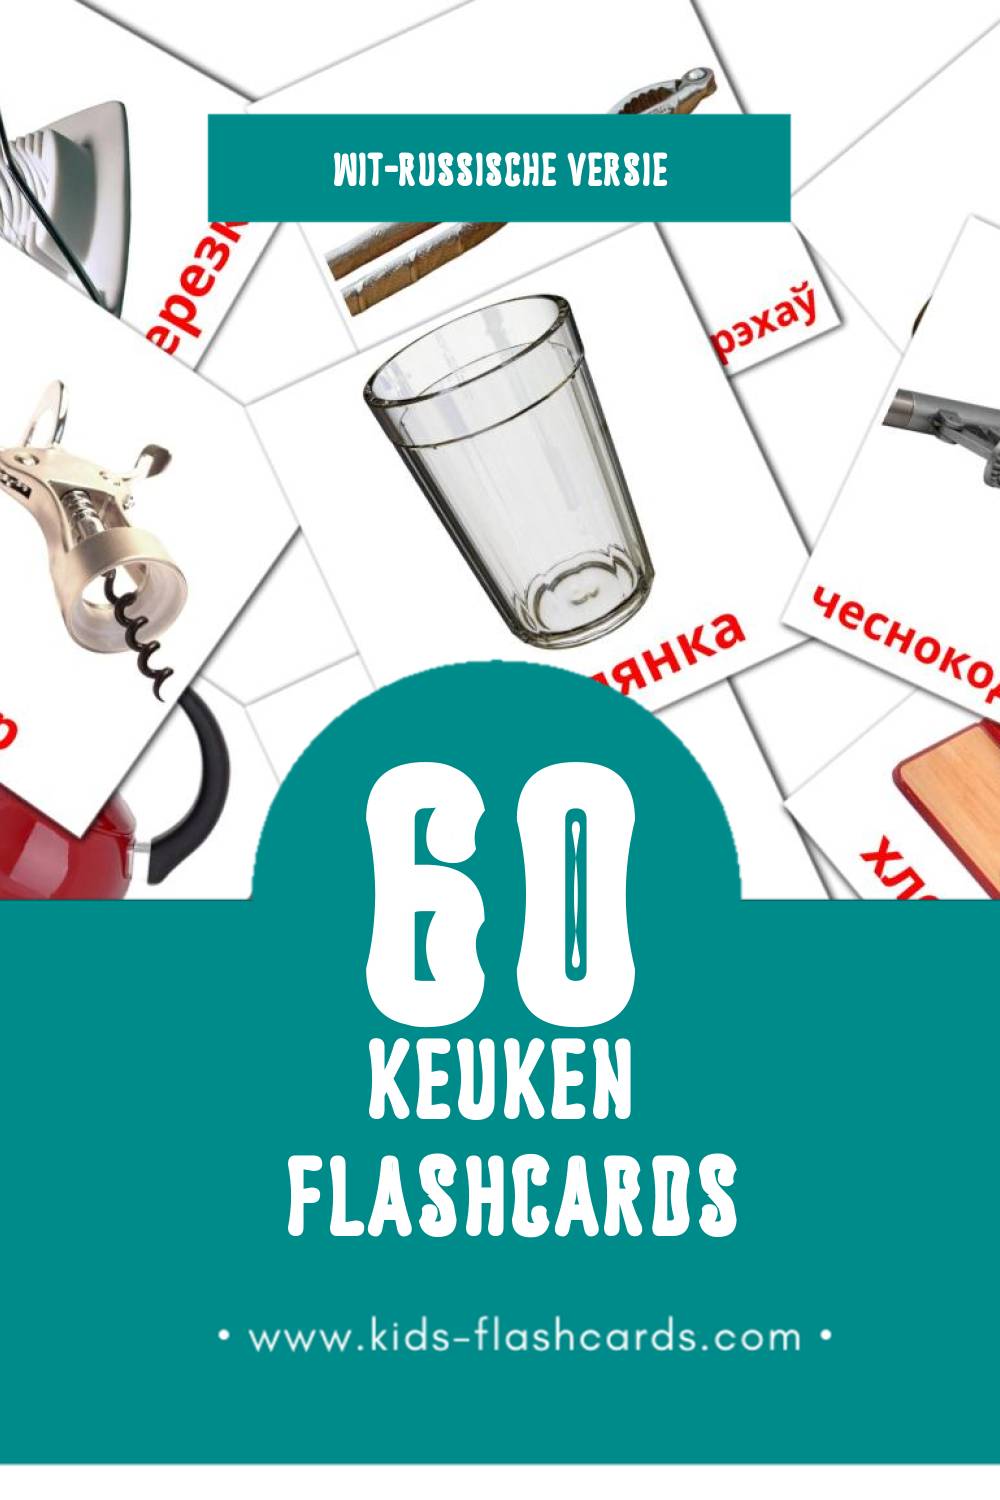 Visuele Кухня Flashcards voor Kleuters (60 kaarten in het Wit-russisch)